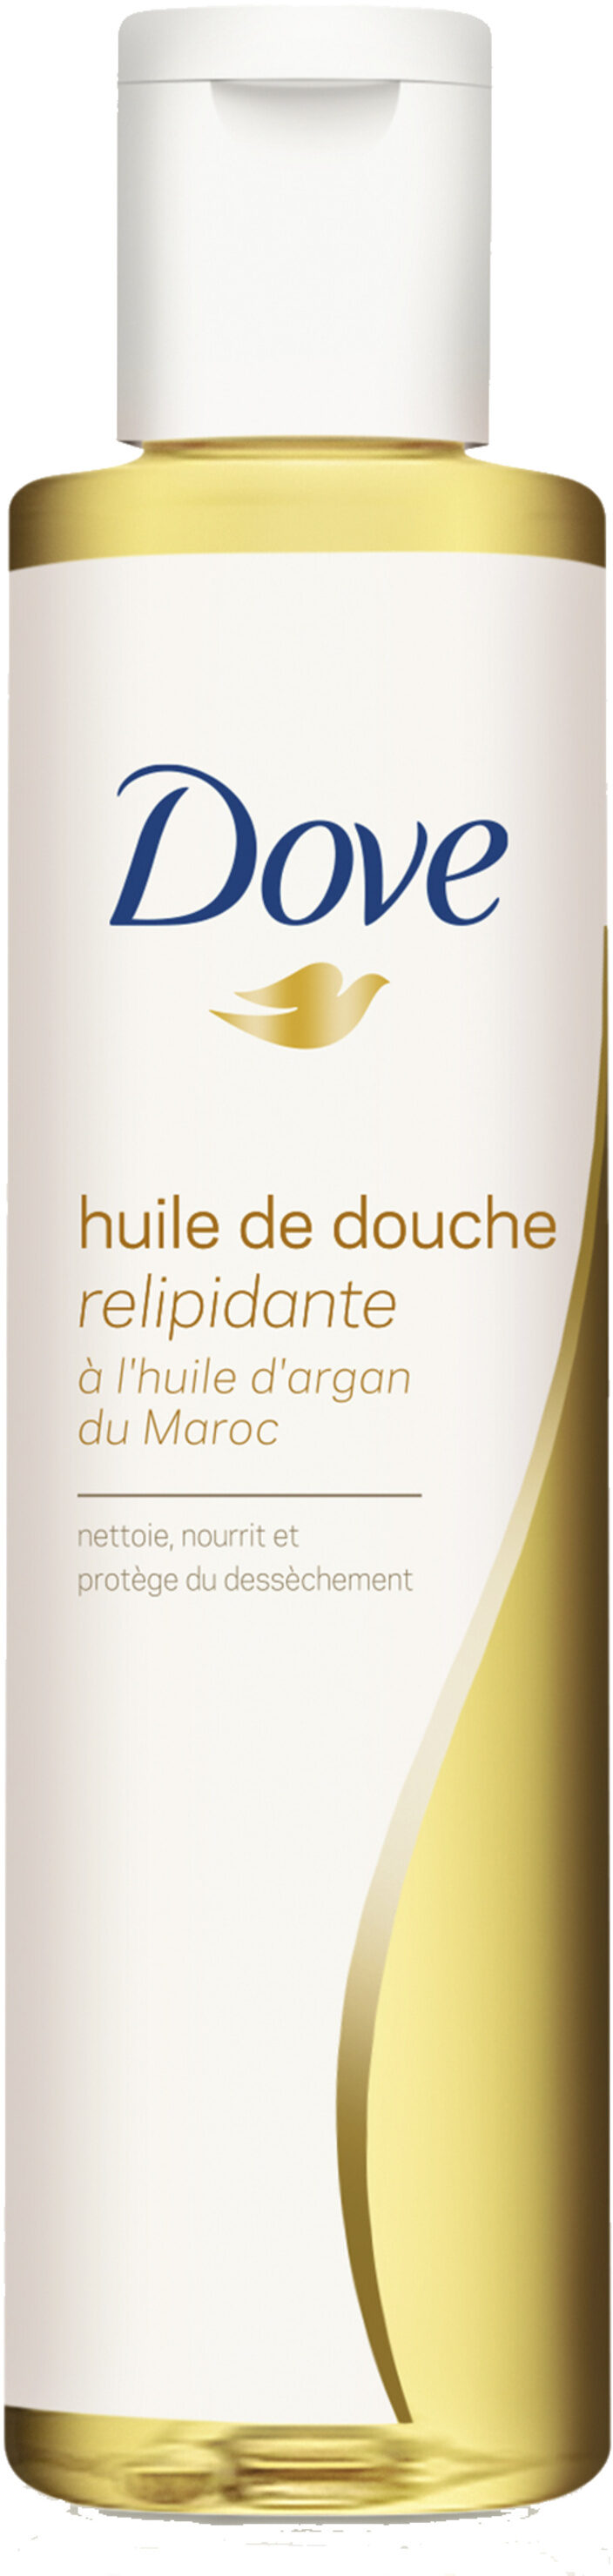 Dove Huile de Douche Relipidante Huile d'Argan du Maroc - Produkt - fr